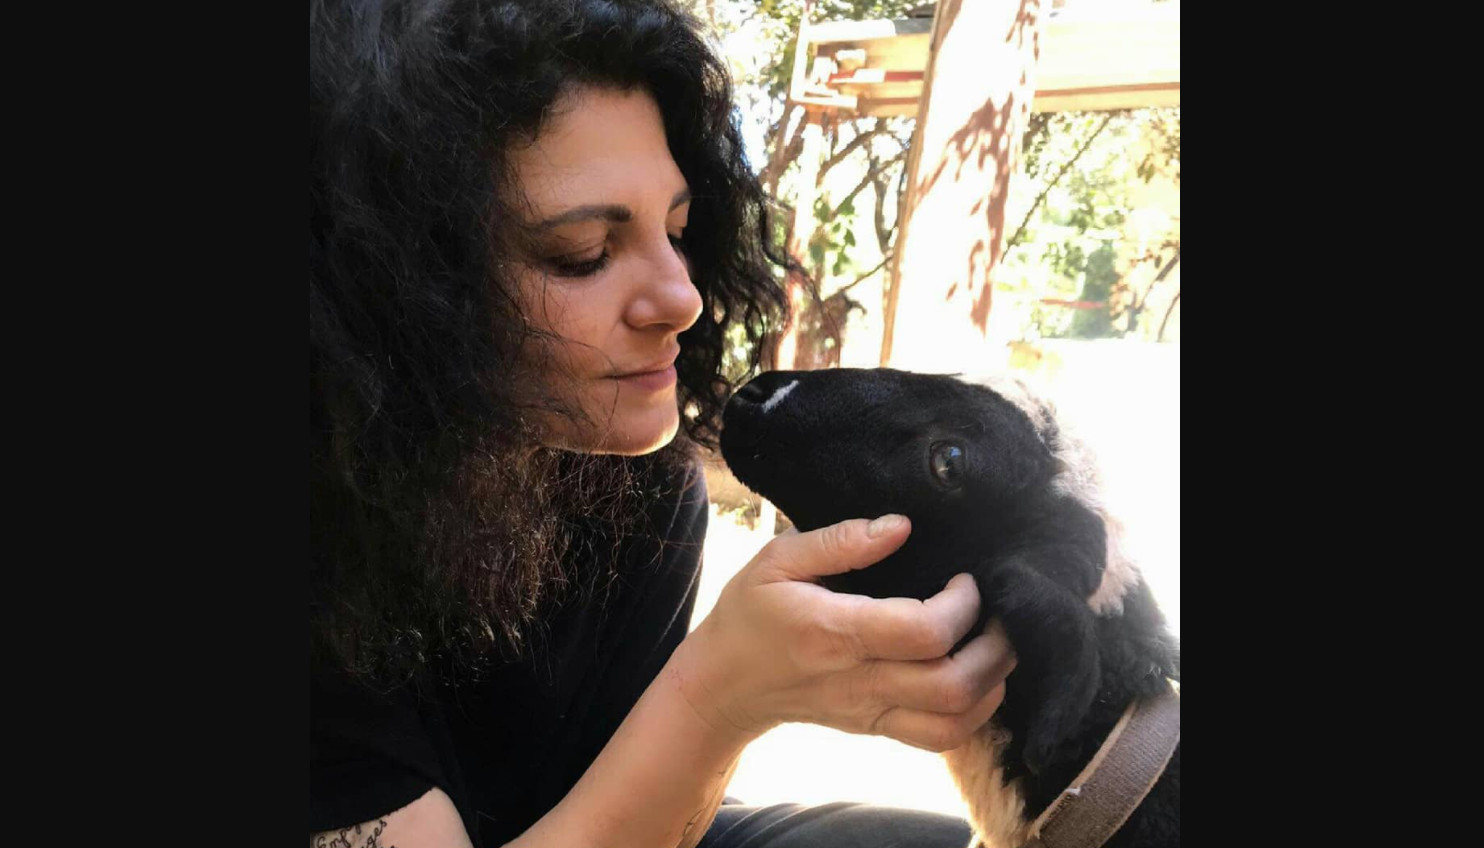 Τάνια Τρύπη σκύλος: Το βίντεο με το κακοποιημένο ζώο που έγινε viral